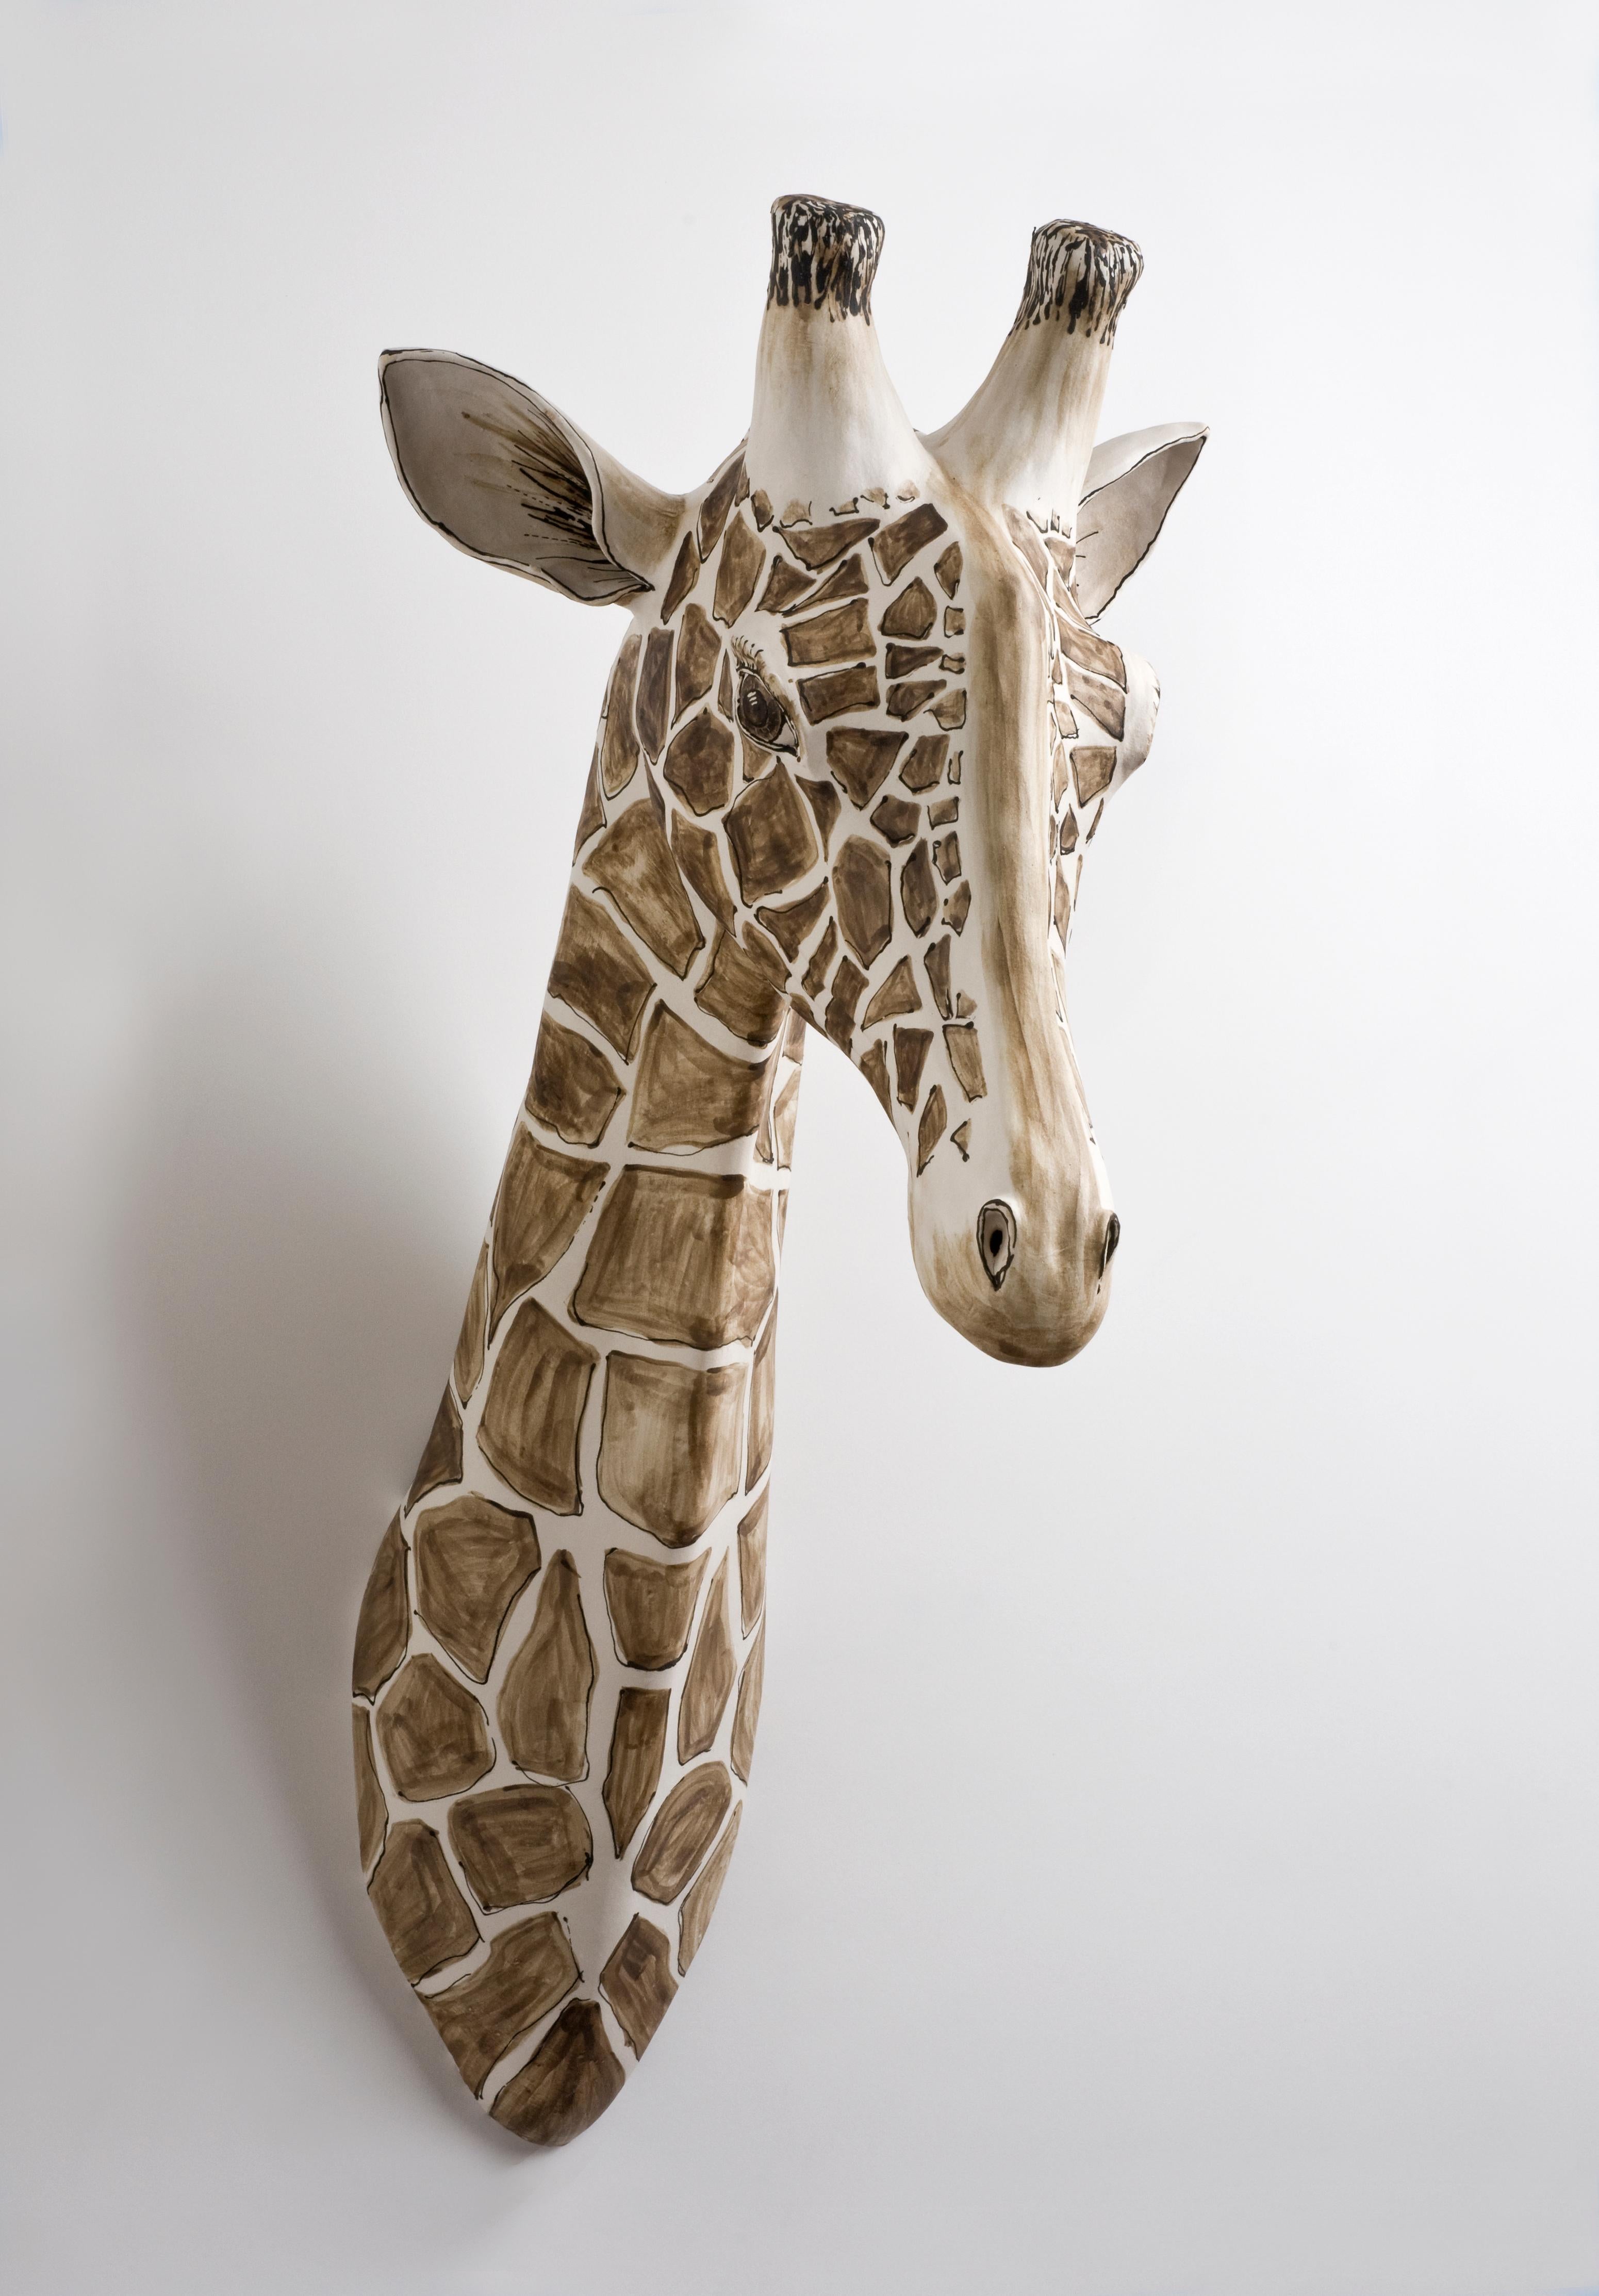 Giraffen-Wandskulptur aus Stein, Porzellan, Porzellanschlicker, Porzellan und schwarzem Fleck – Sculpture von Katharine Morling